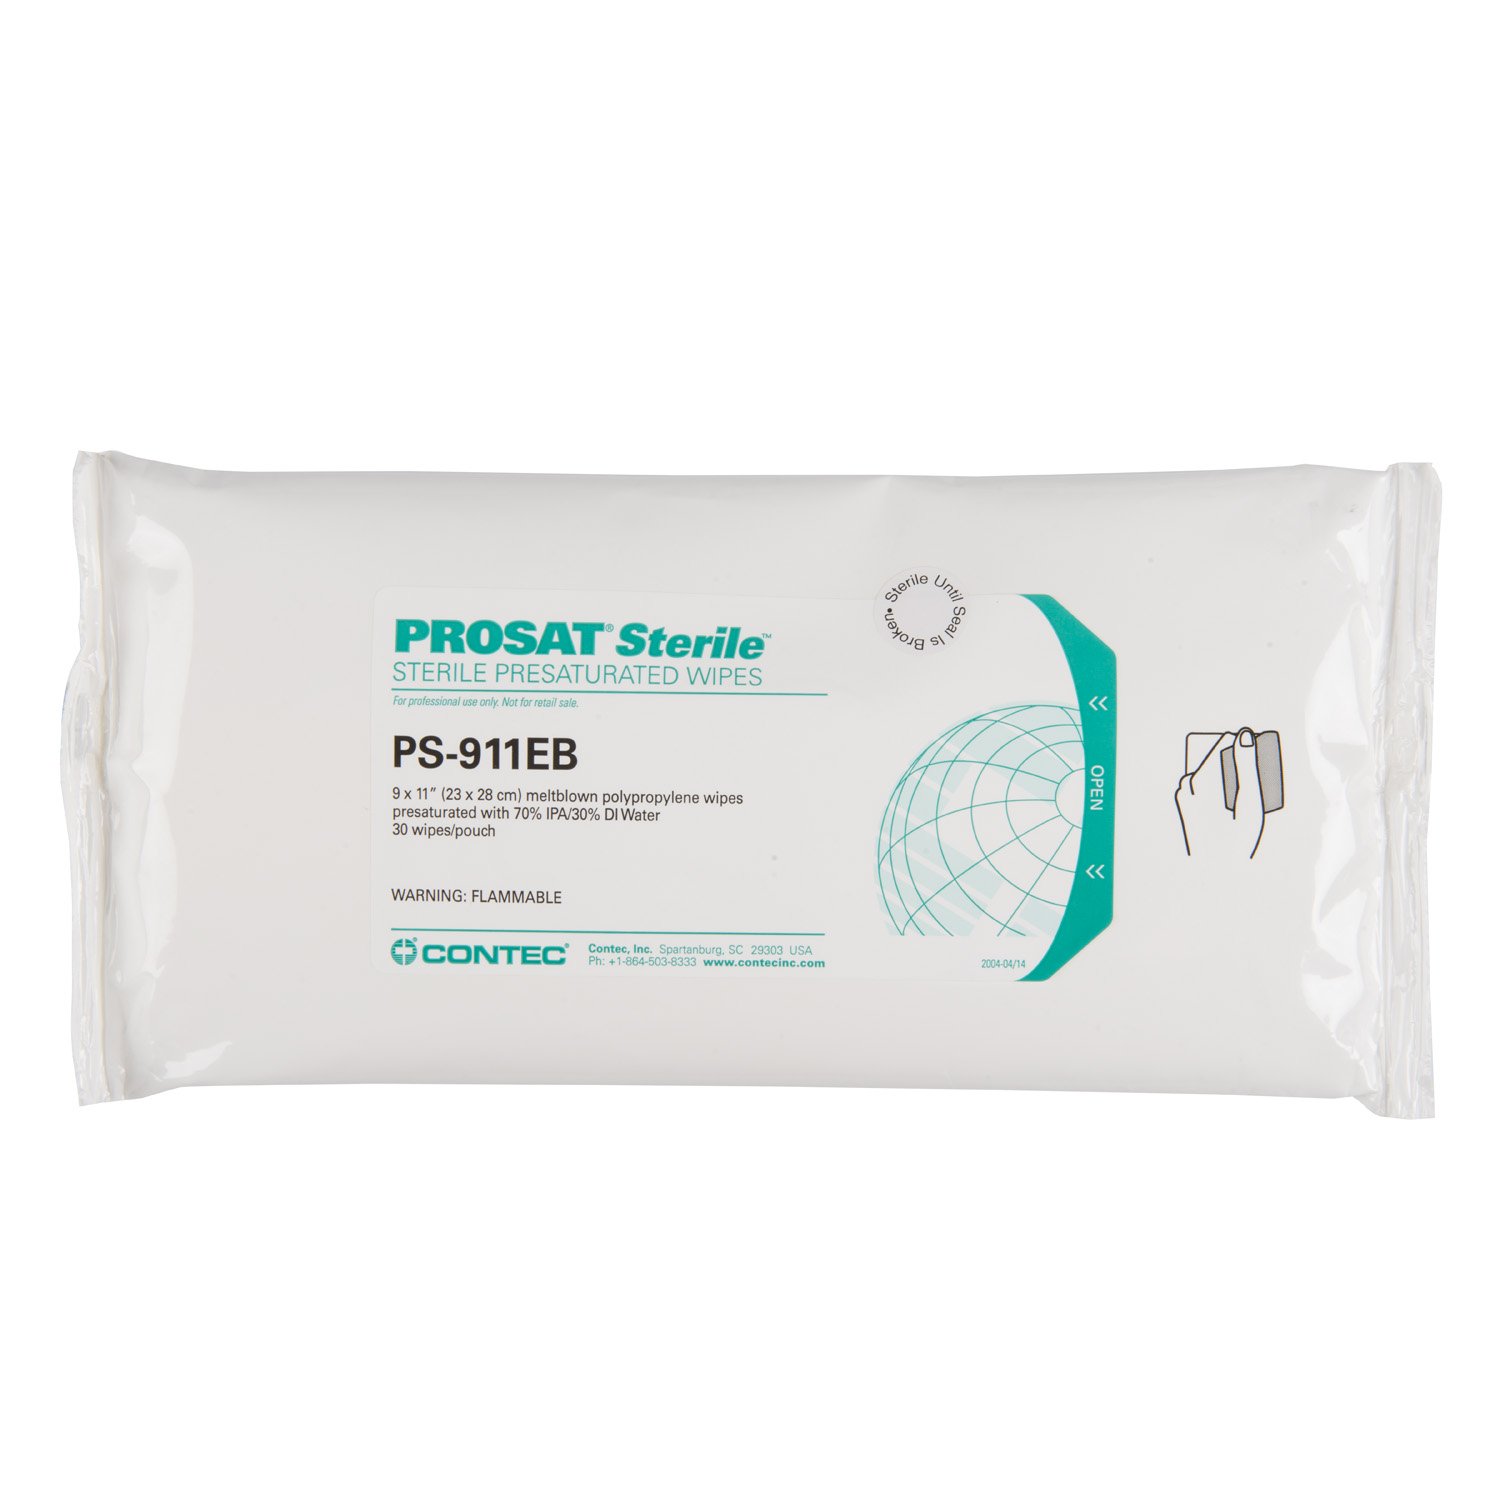 PROSAT Sterile™ Meltblown Polypropylene Wipes (PS-911EB)